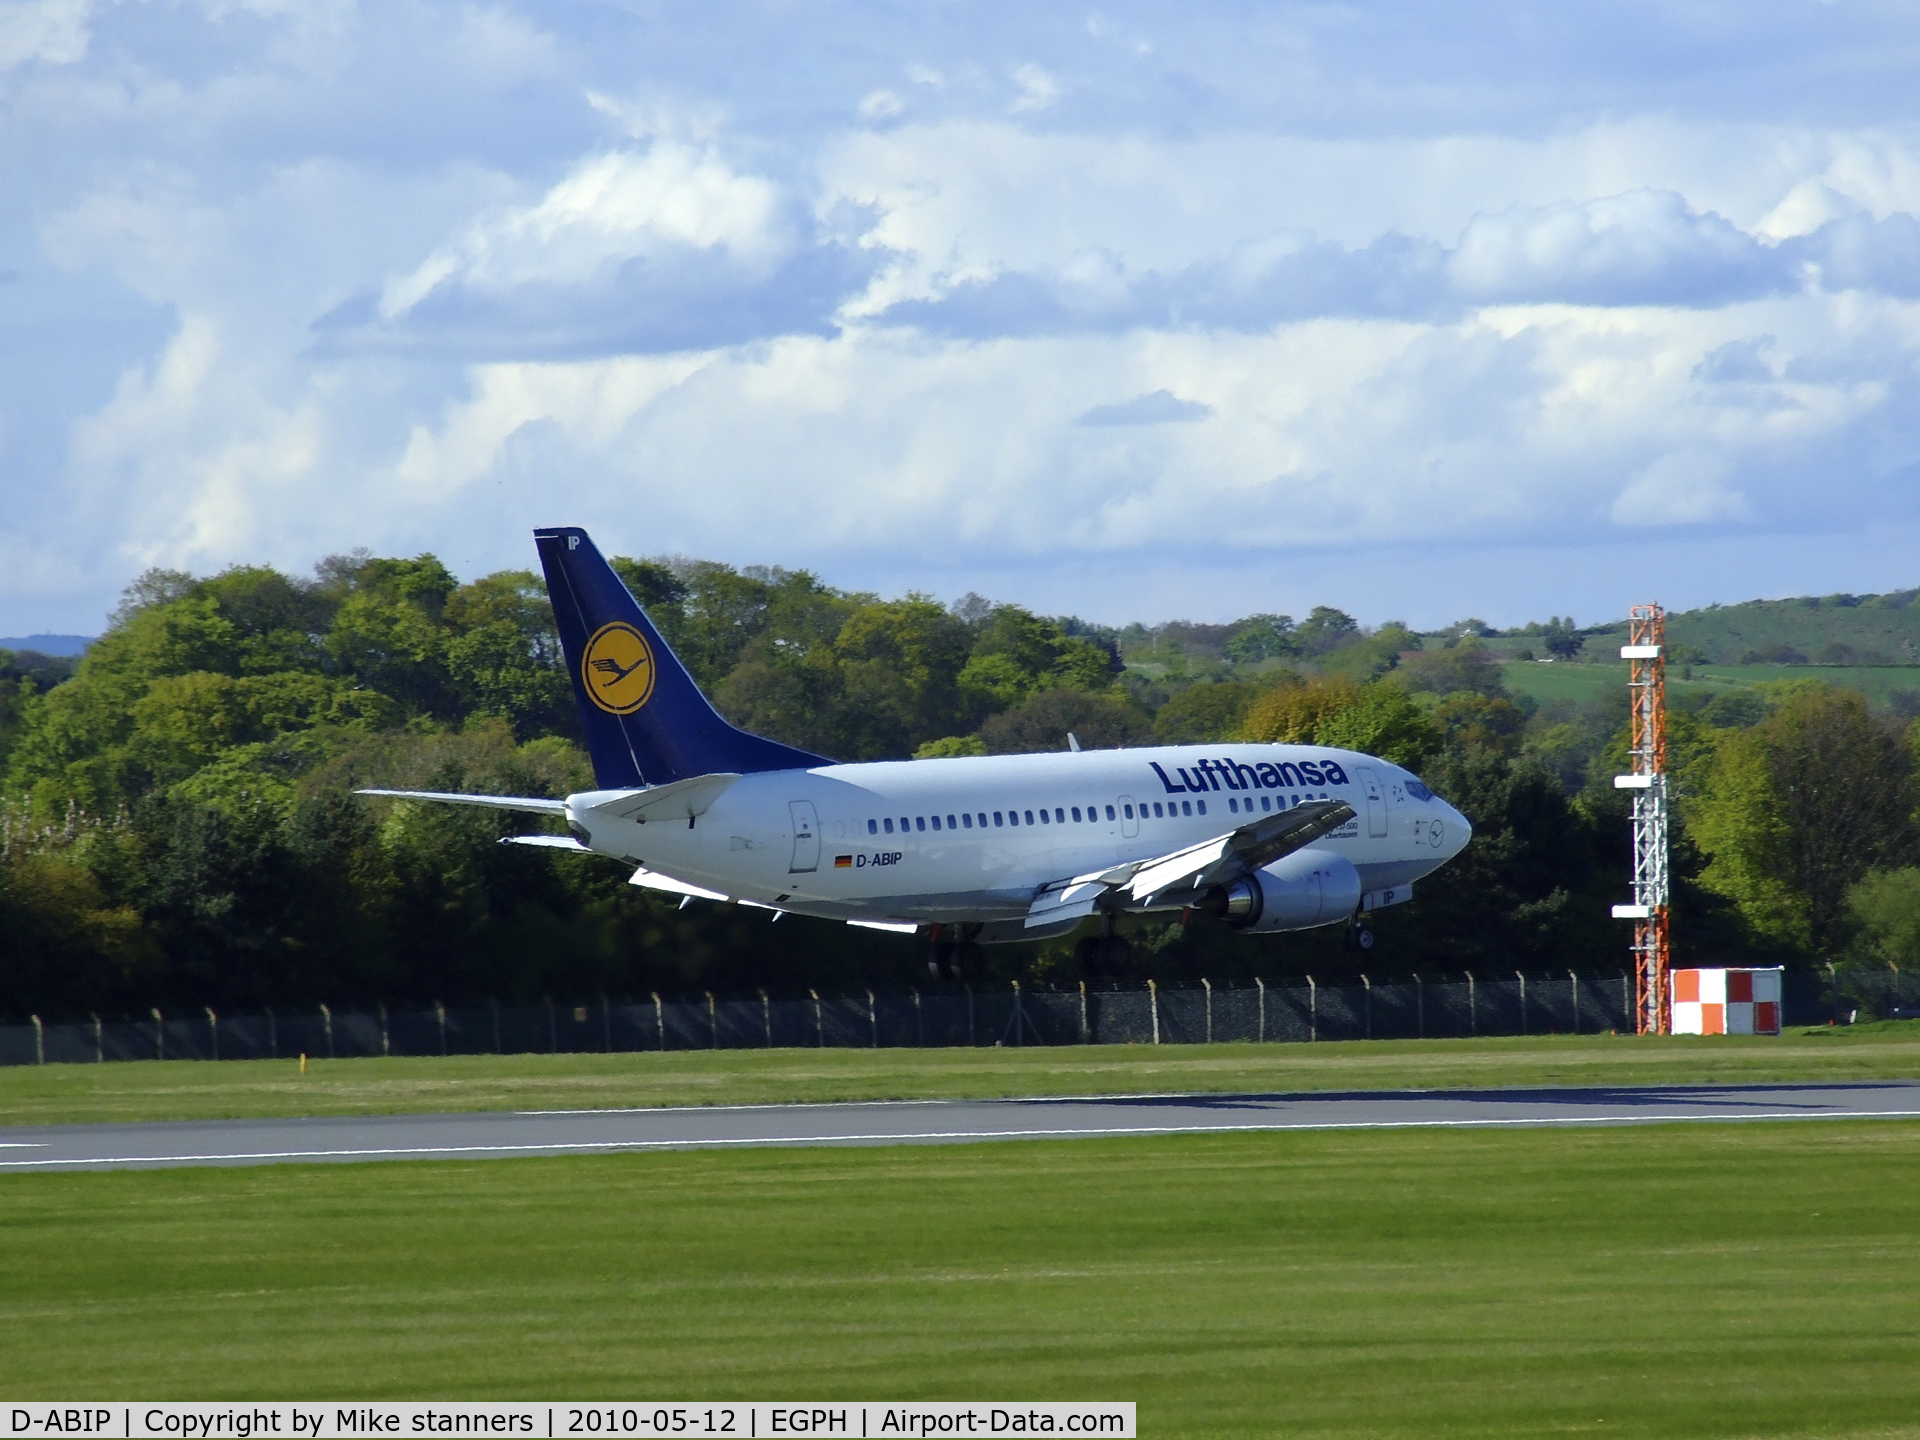 D-ABIP, 1991 Boeing 737-530 C/N 24940, Lufthansa Boeing 737-530 landing on runway 06